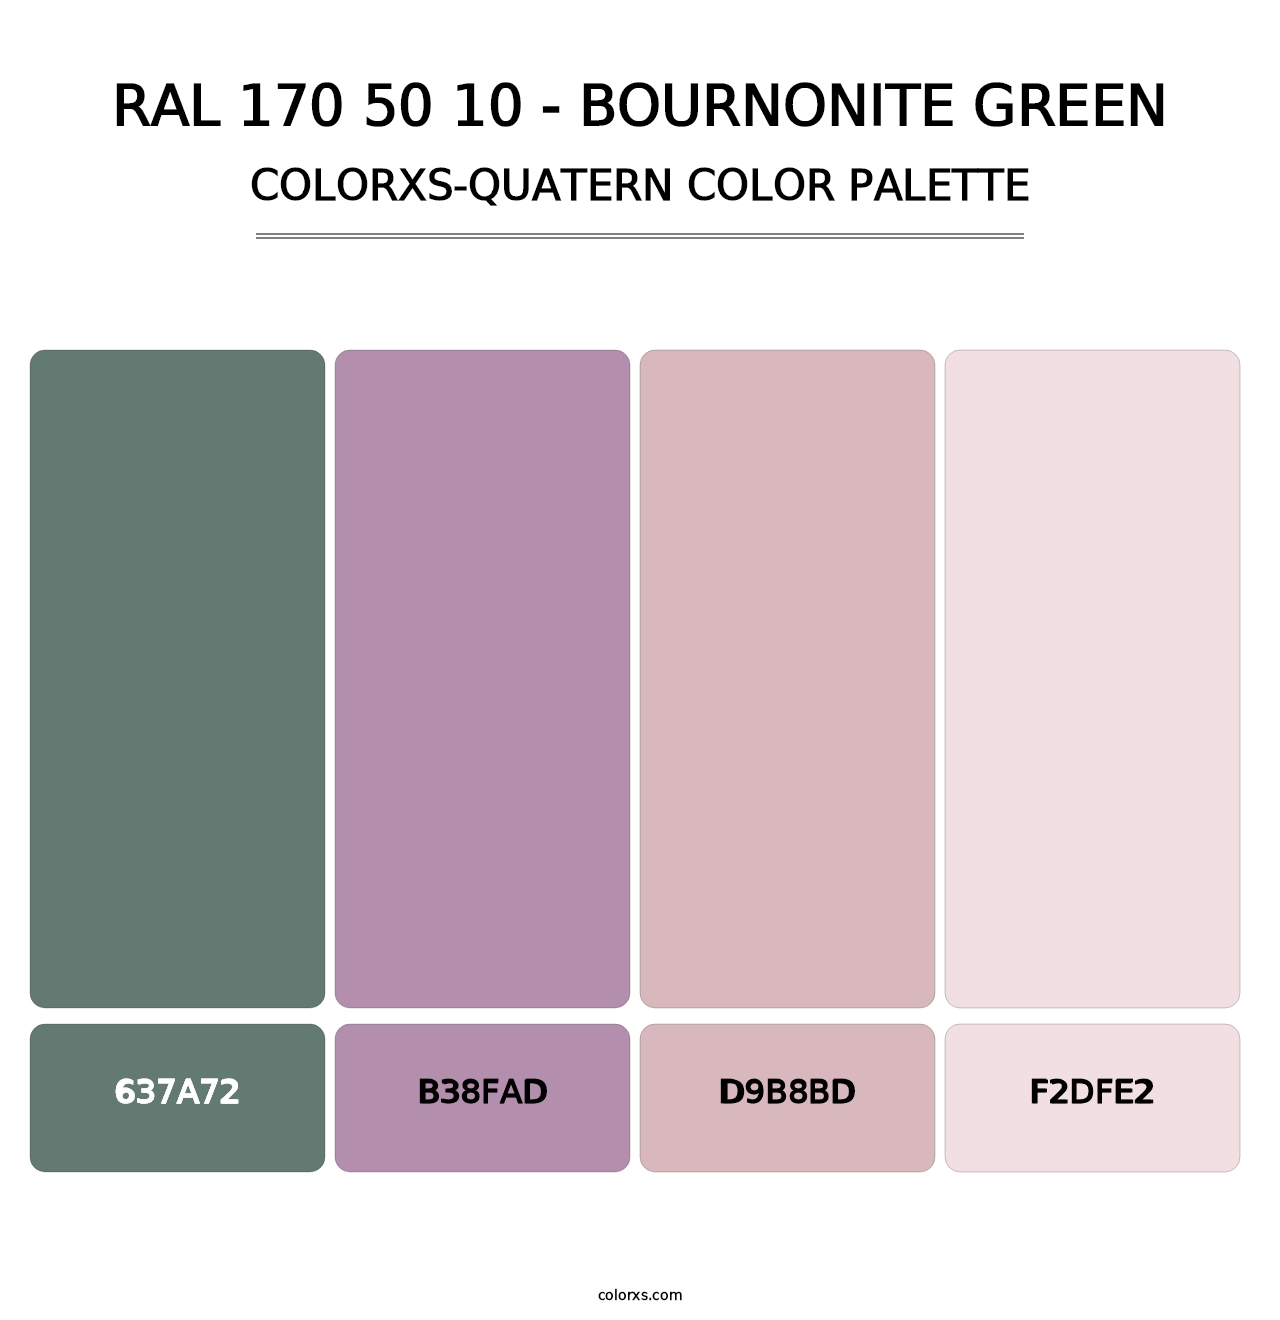 RAL 170 50 10 - Bournonite Green - Colorxs Quatern Palette